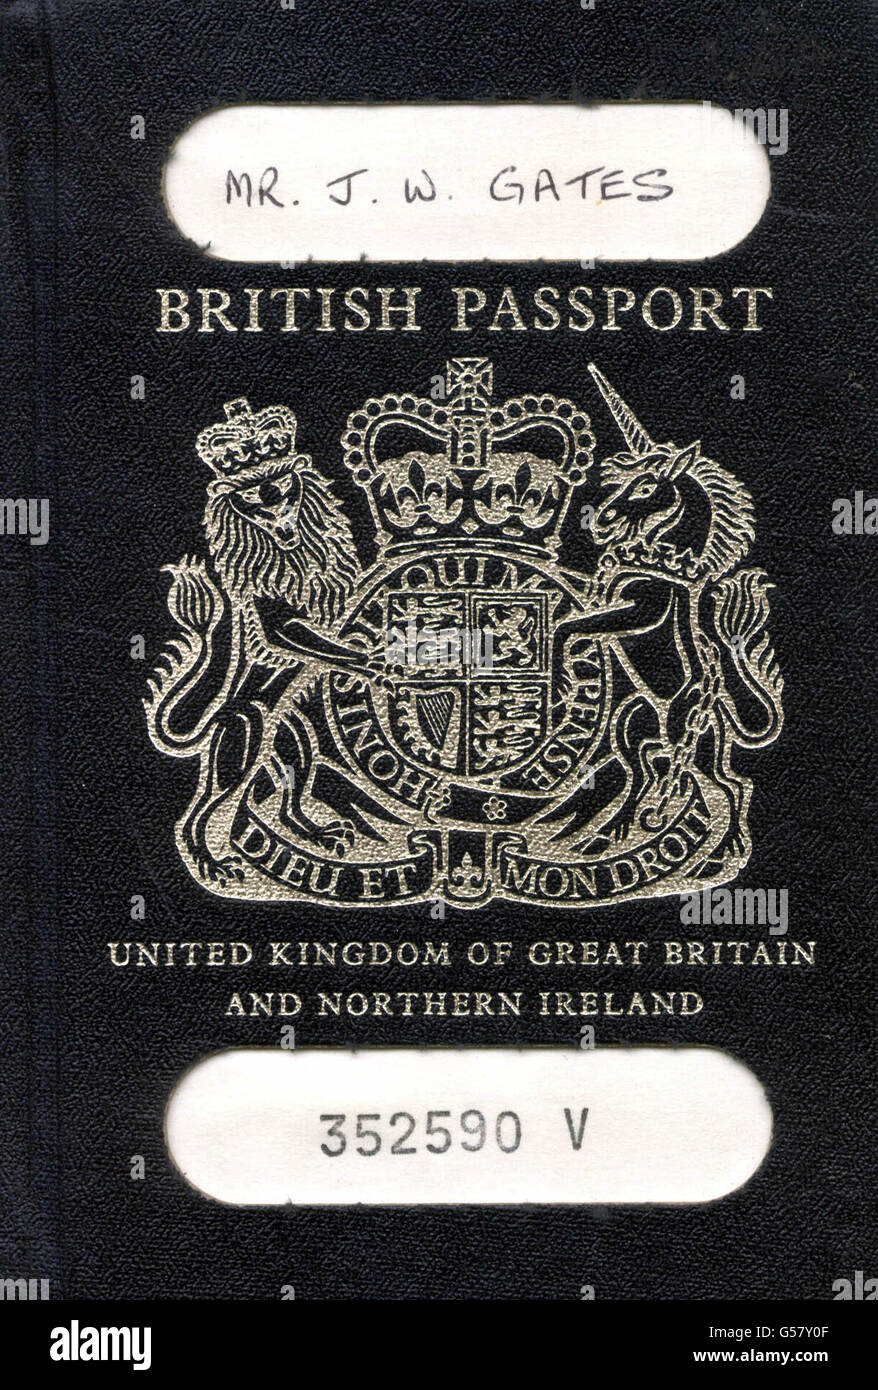 La copertina del passaporto del giornalista di viaggio Jeremy Gates dell'Associazione Stampa. Foto Stock